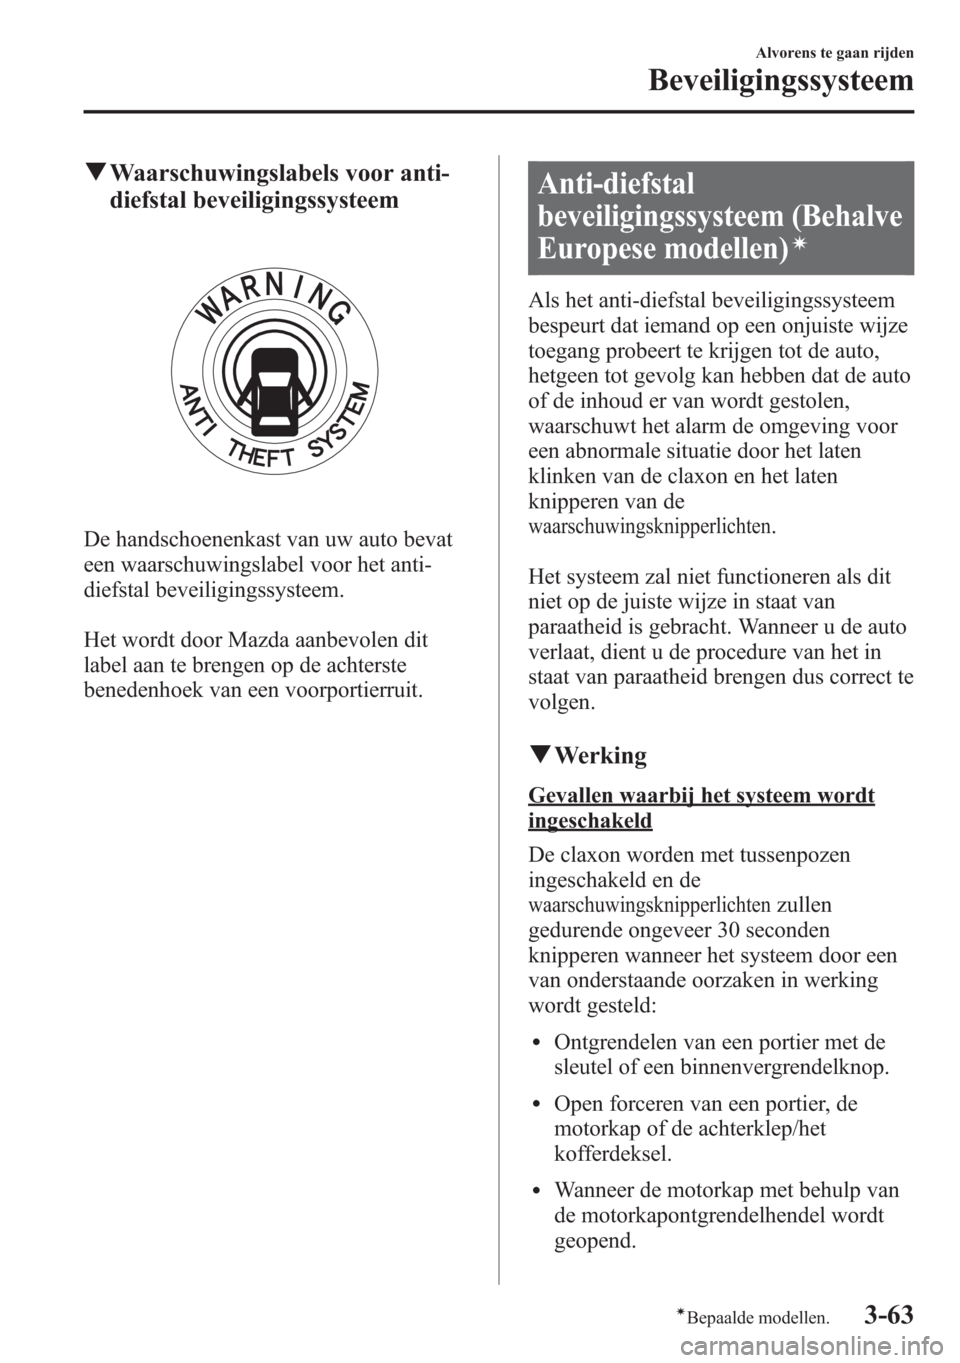 MAZDA MODEL 6 2015  Handleiding (in Dutch) qWaarschuwingslabels voor anti-
diefstal beveiligingssysteem
De handschoenenkast van uw auto bevat
een waarschuwingslabel voor het anti-
diefstal beveiligingssysteem.
Het wordt door Mazda aanbevolen d